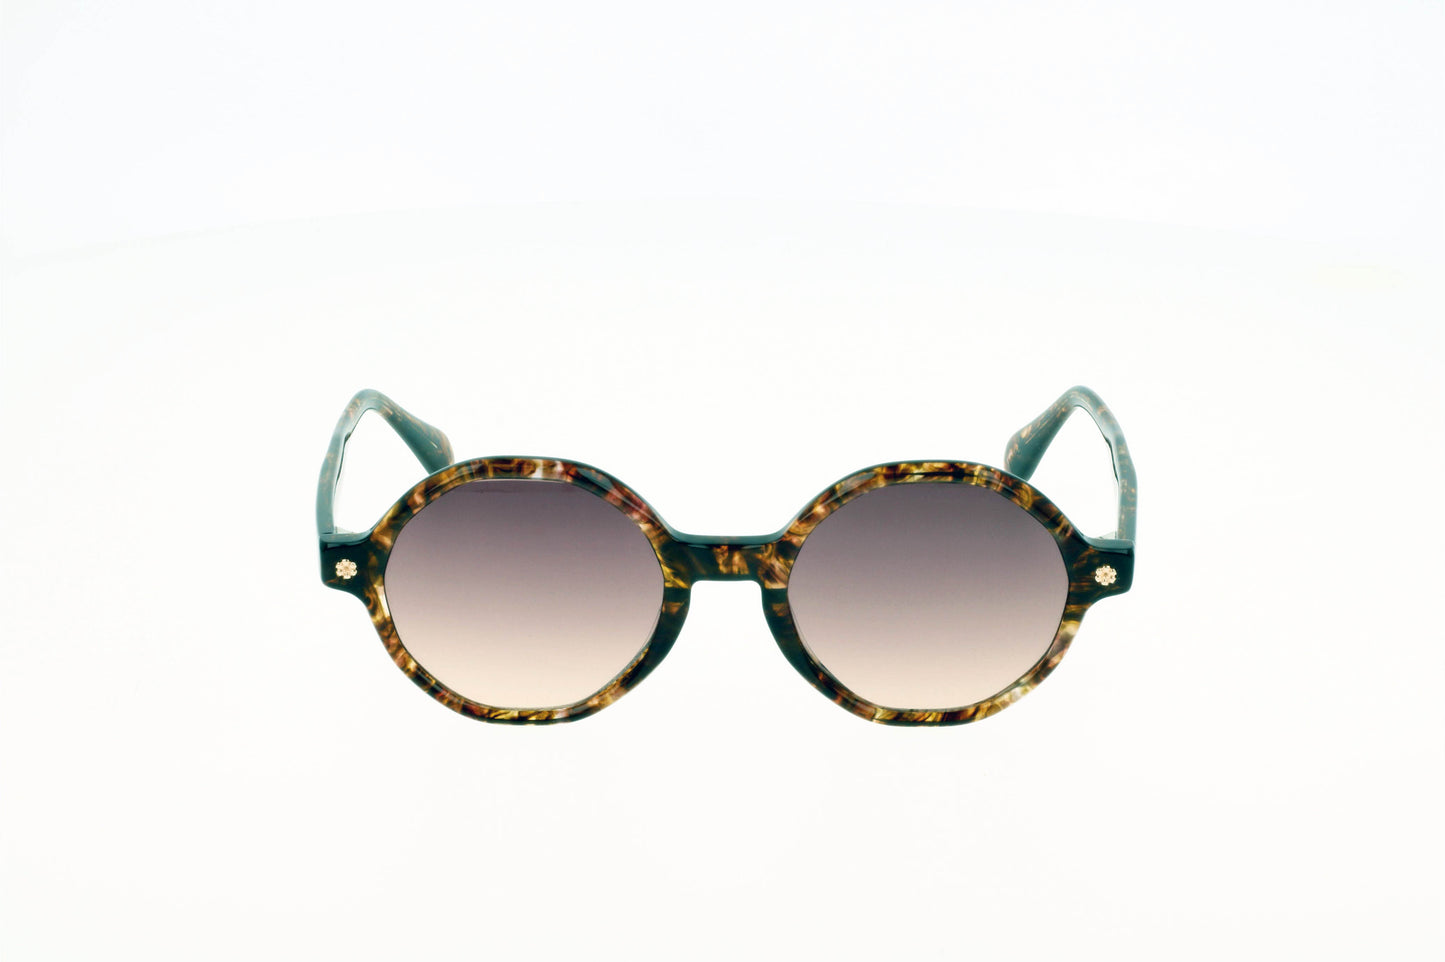 Originel eyewear France vous propose des lunettes de soleil tendances et modernes. Une forme hexagonaleet une couleur écaille parfaite pour l'été.